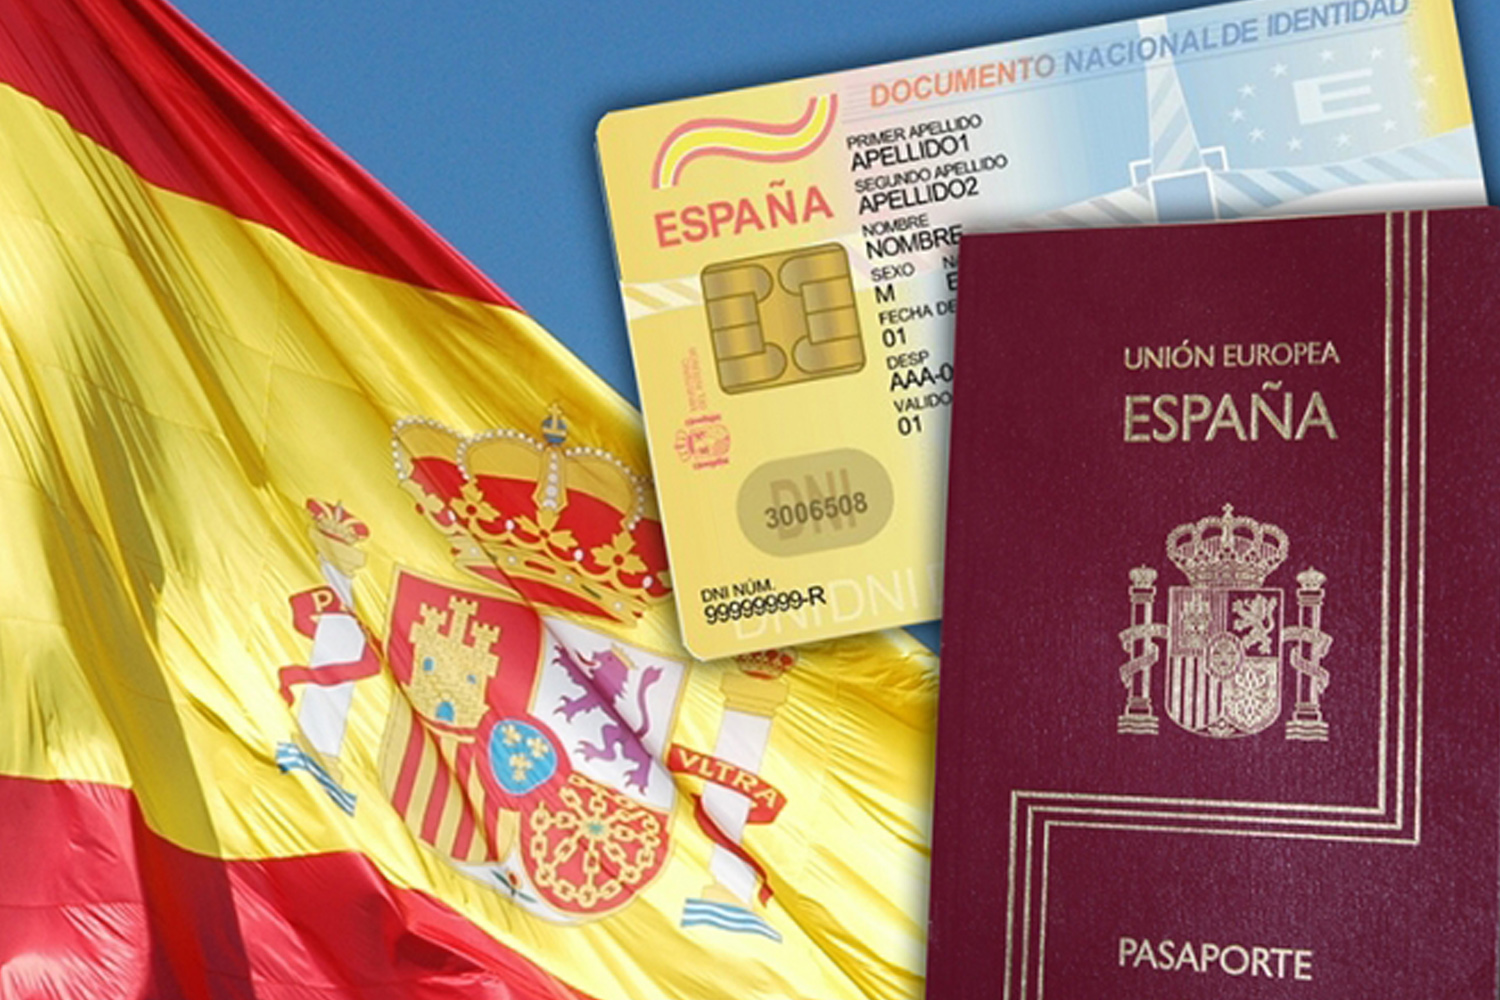 Как получить гражданство в испании доминика отдых цены